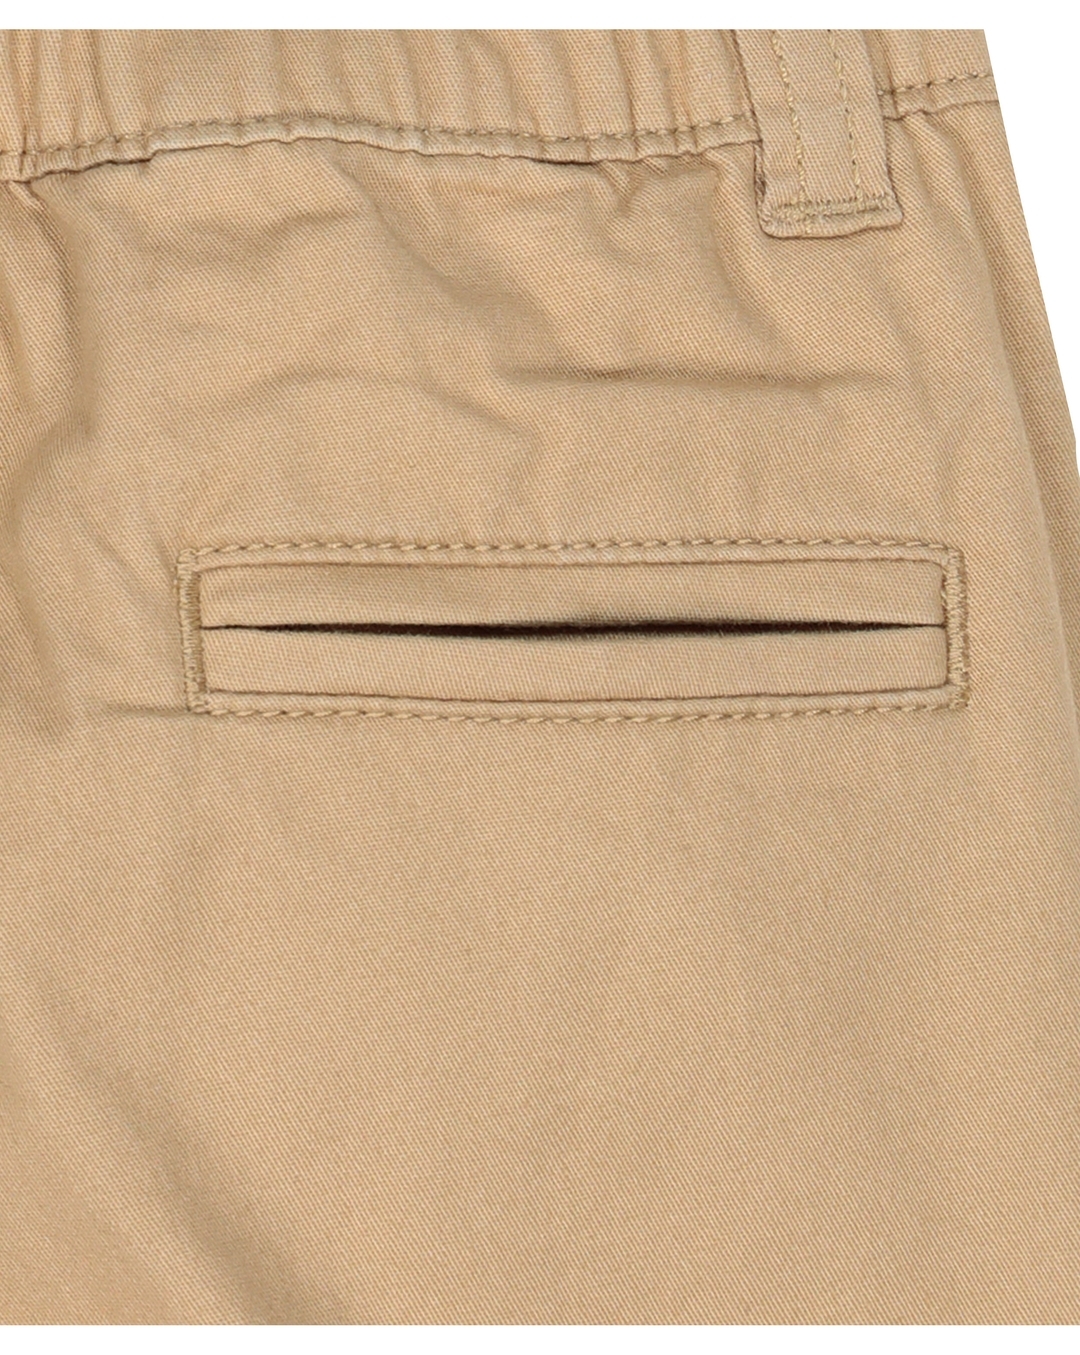 Wholesale Sportswear kid trouser Boys Trousers| Alibaba.com